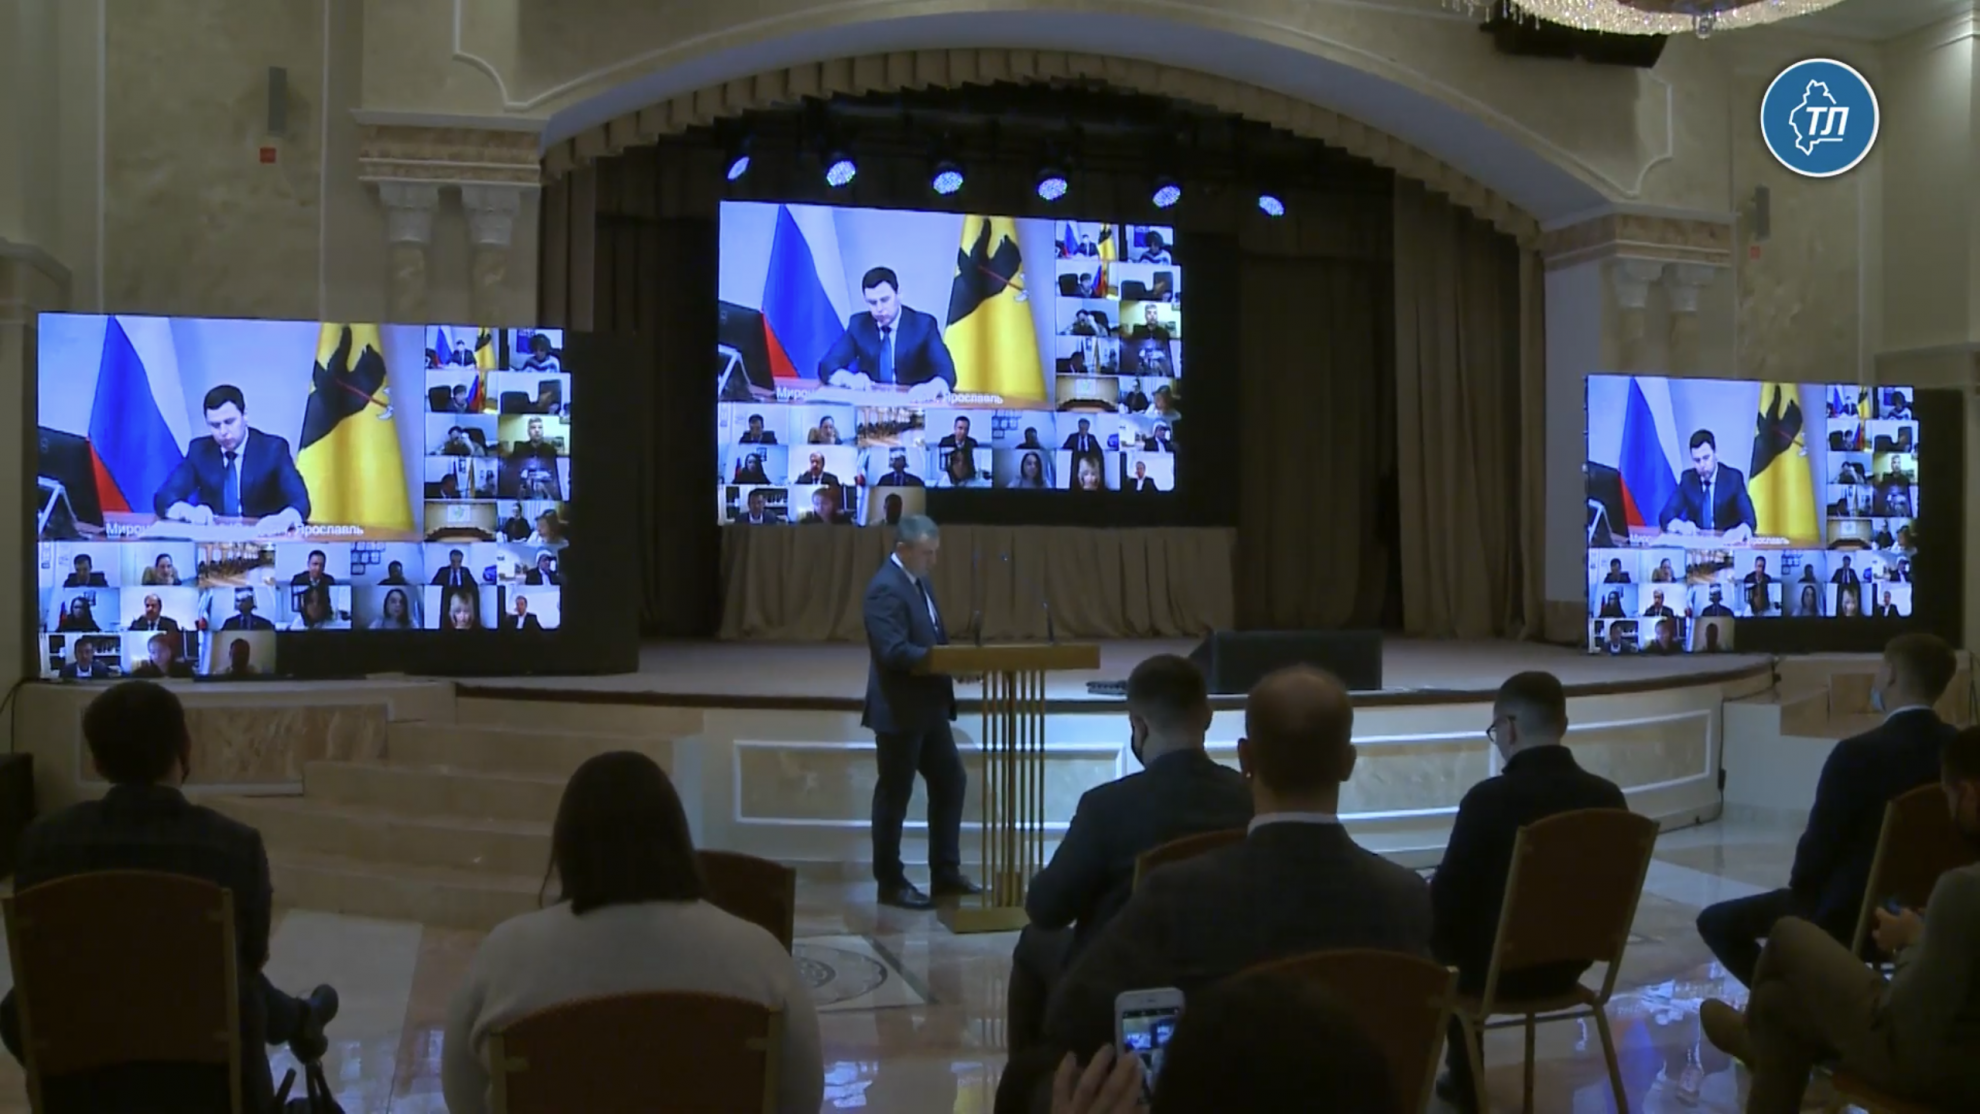 Борис Пайкин: «Четкая, понятная и эффективная молодежная политика – залог благополучия России»